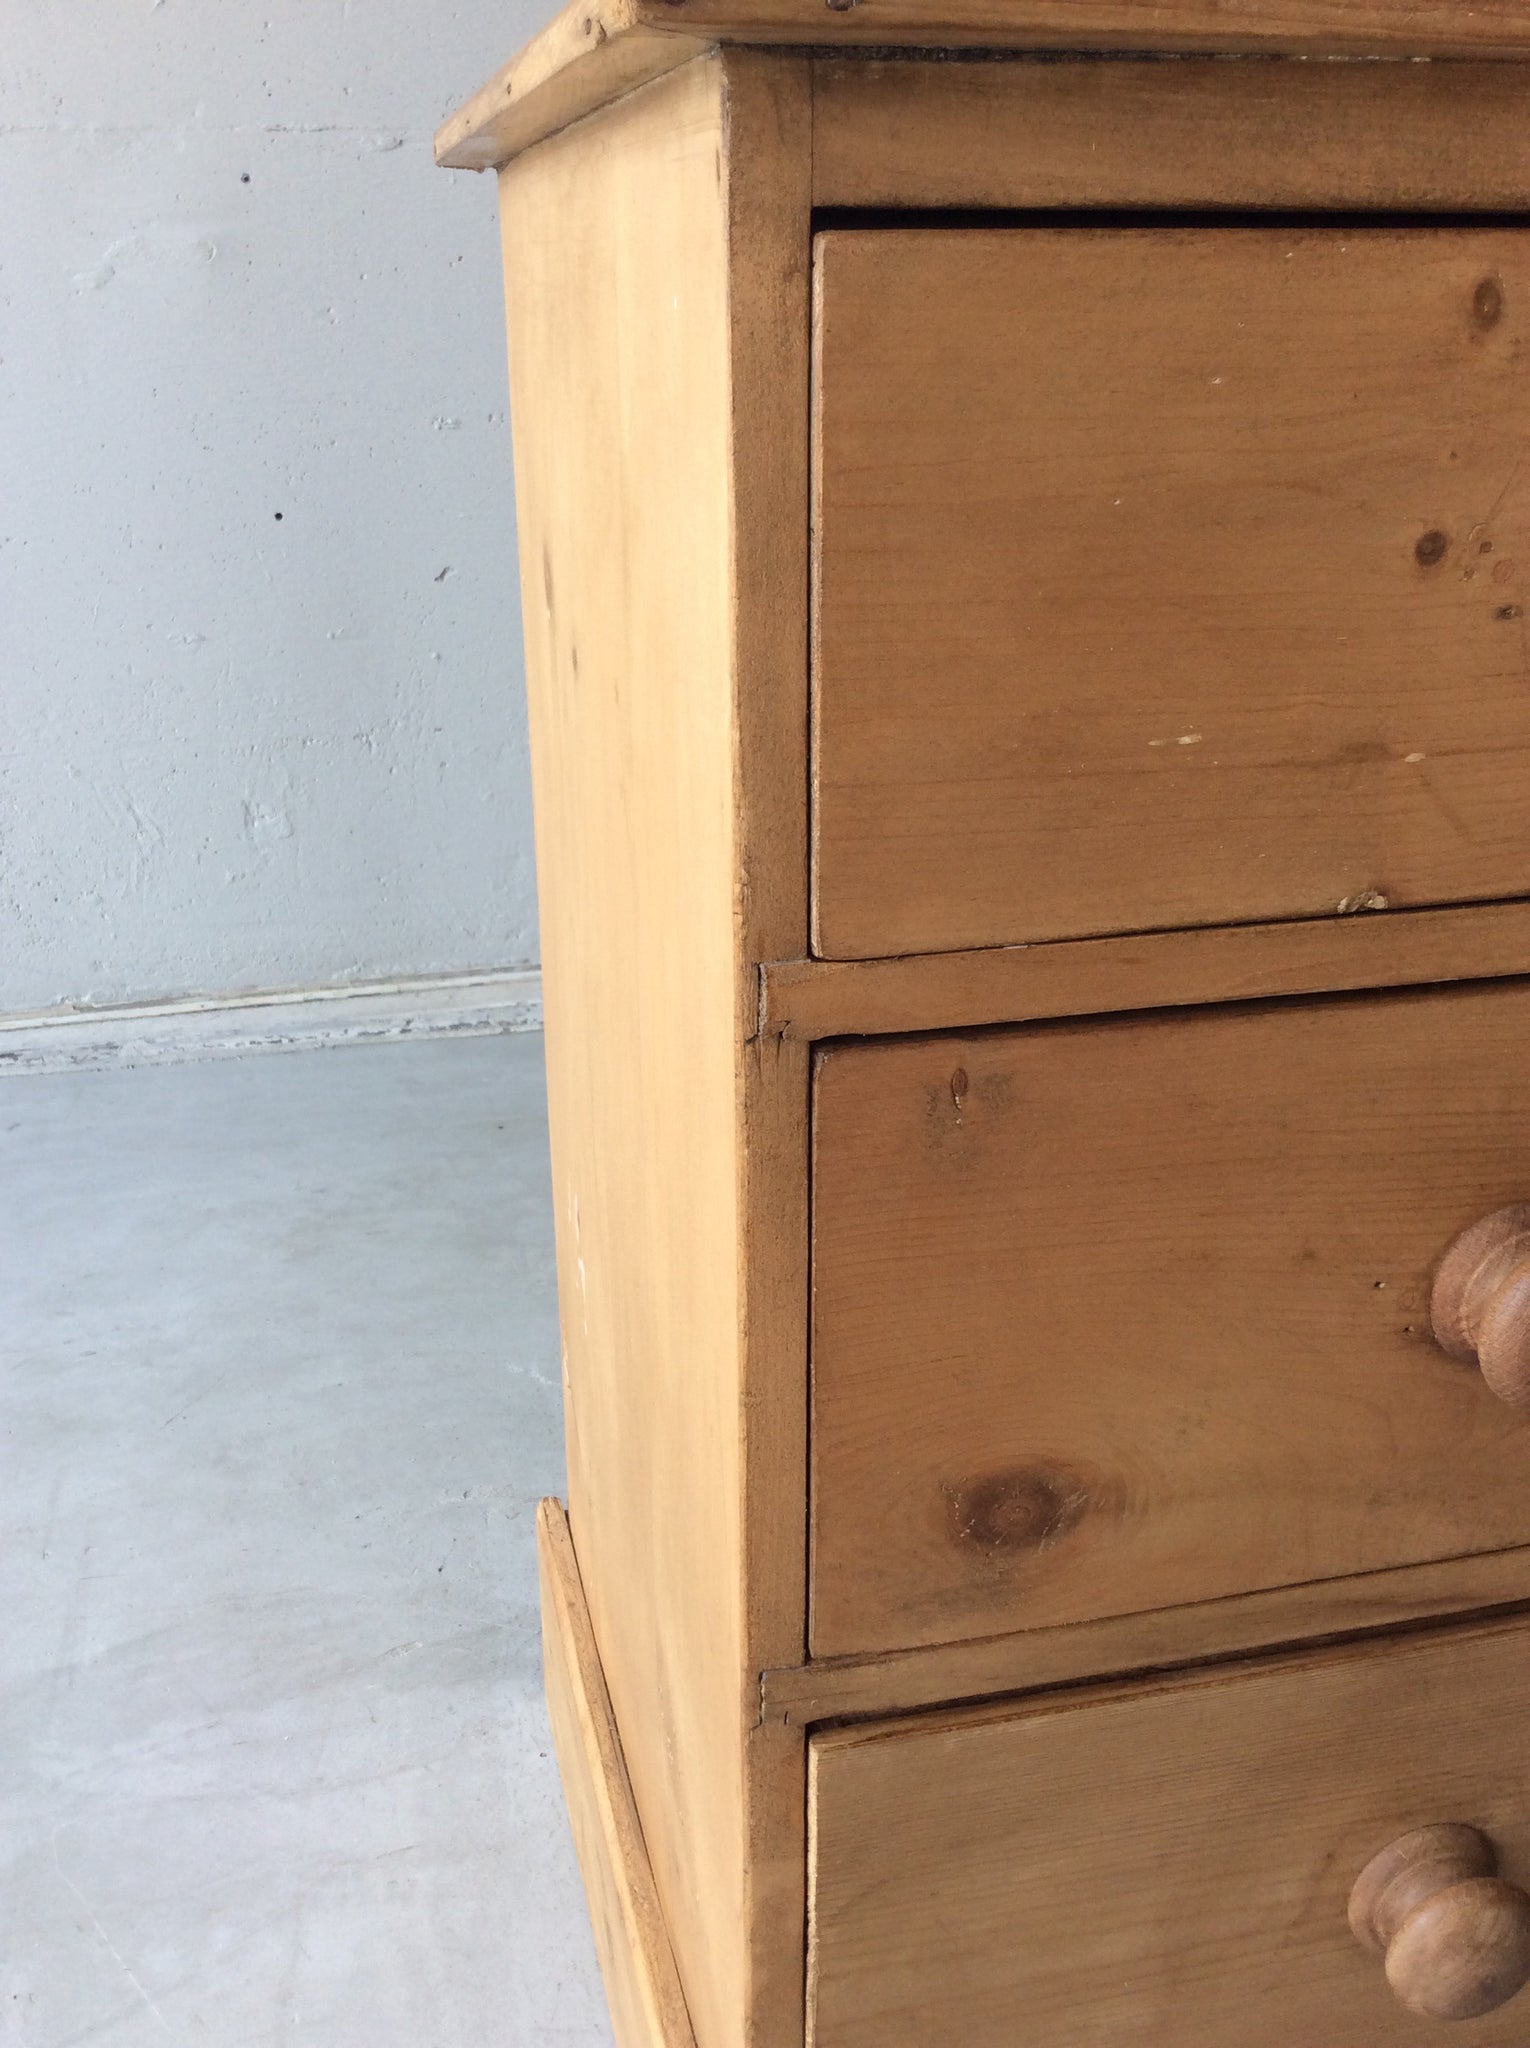 オールド パイン チェスト / old pine chest of drawers  #0118